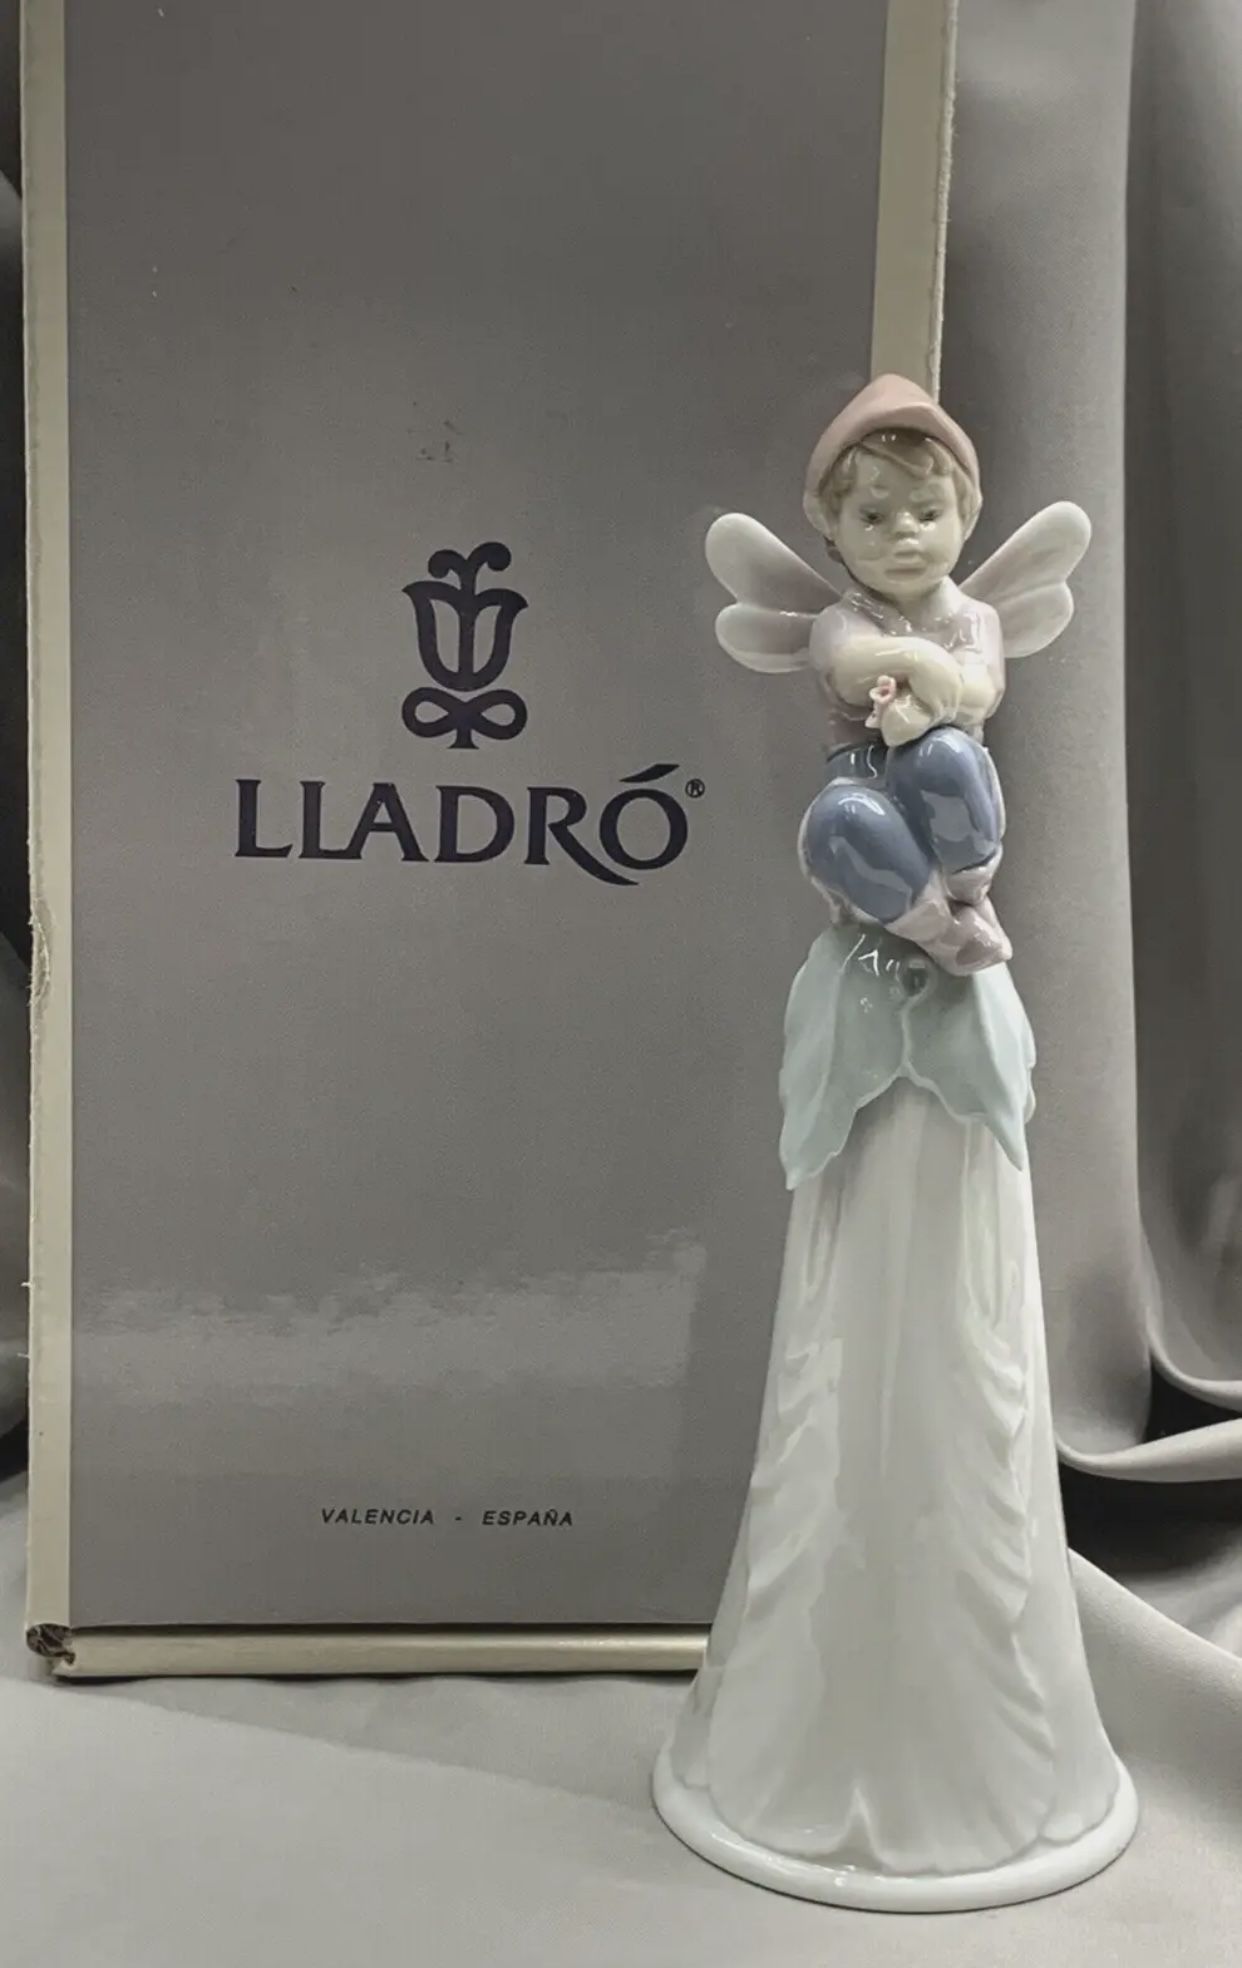 Lladro “It’s a Boy” Figurine